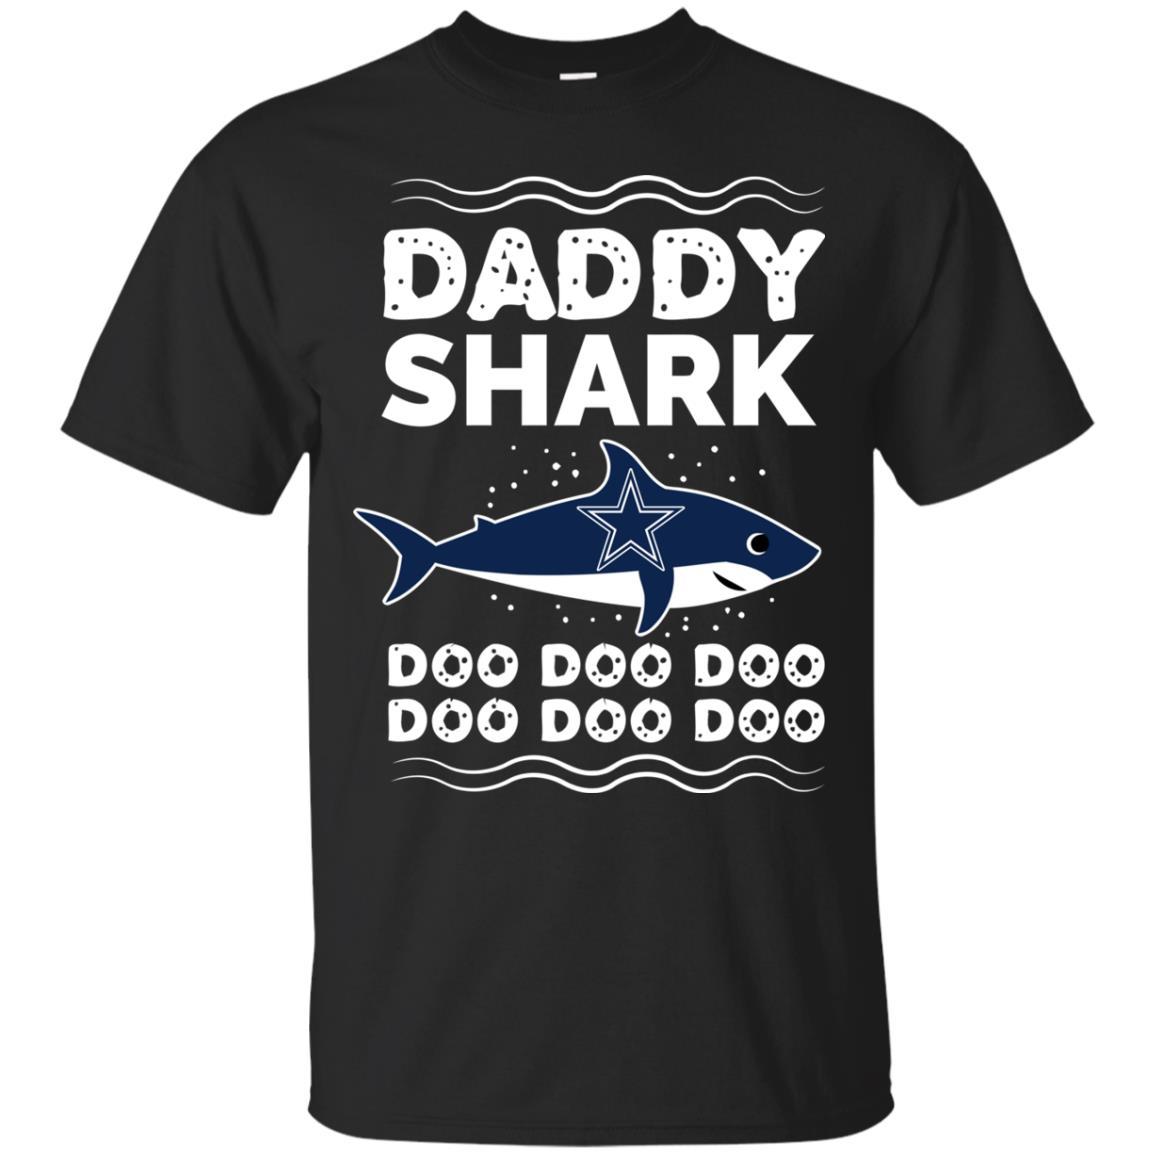 Buy Daddy Shark Dallas Cow Doo Doo T Shirt